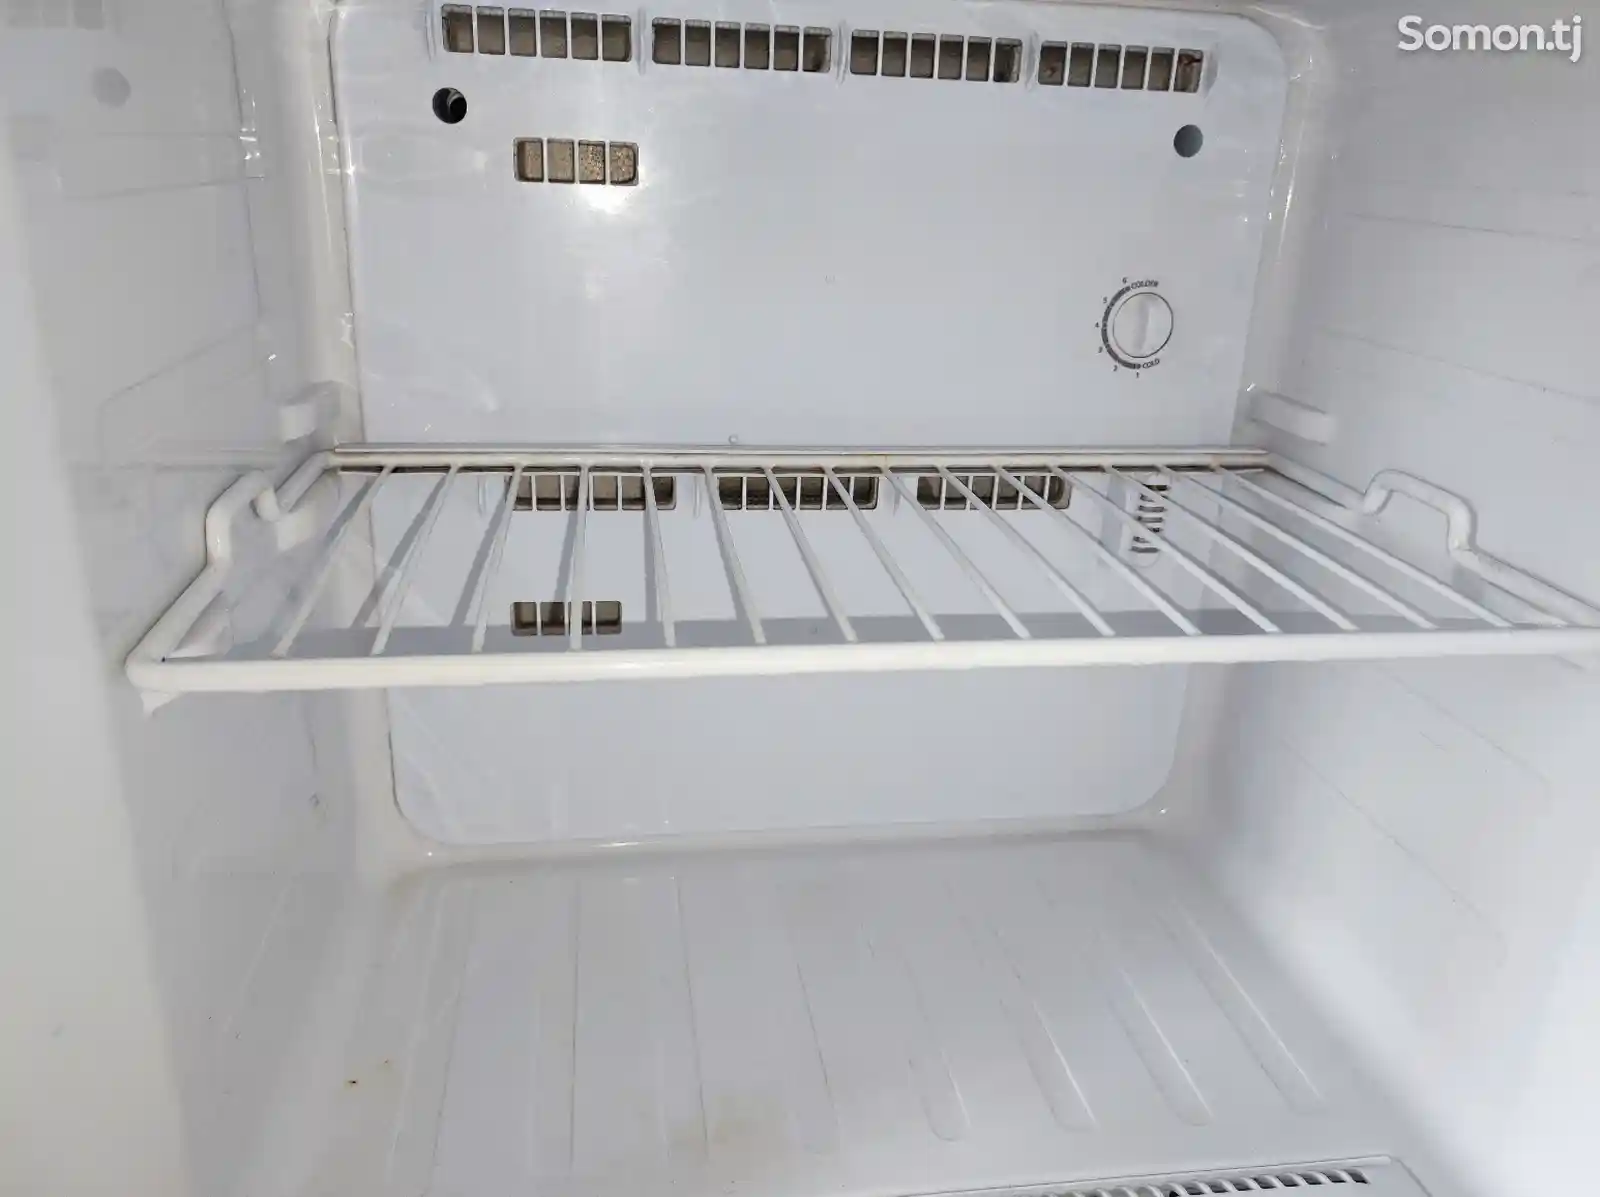 Холодильник Samsung-8